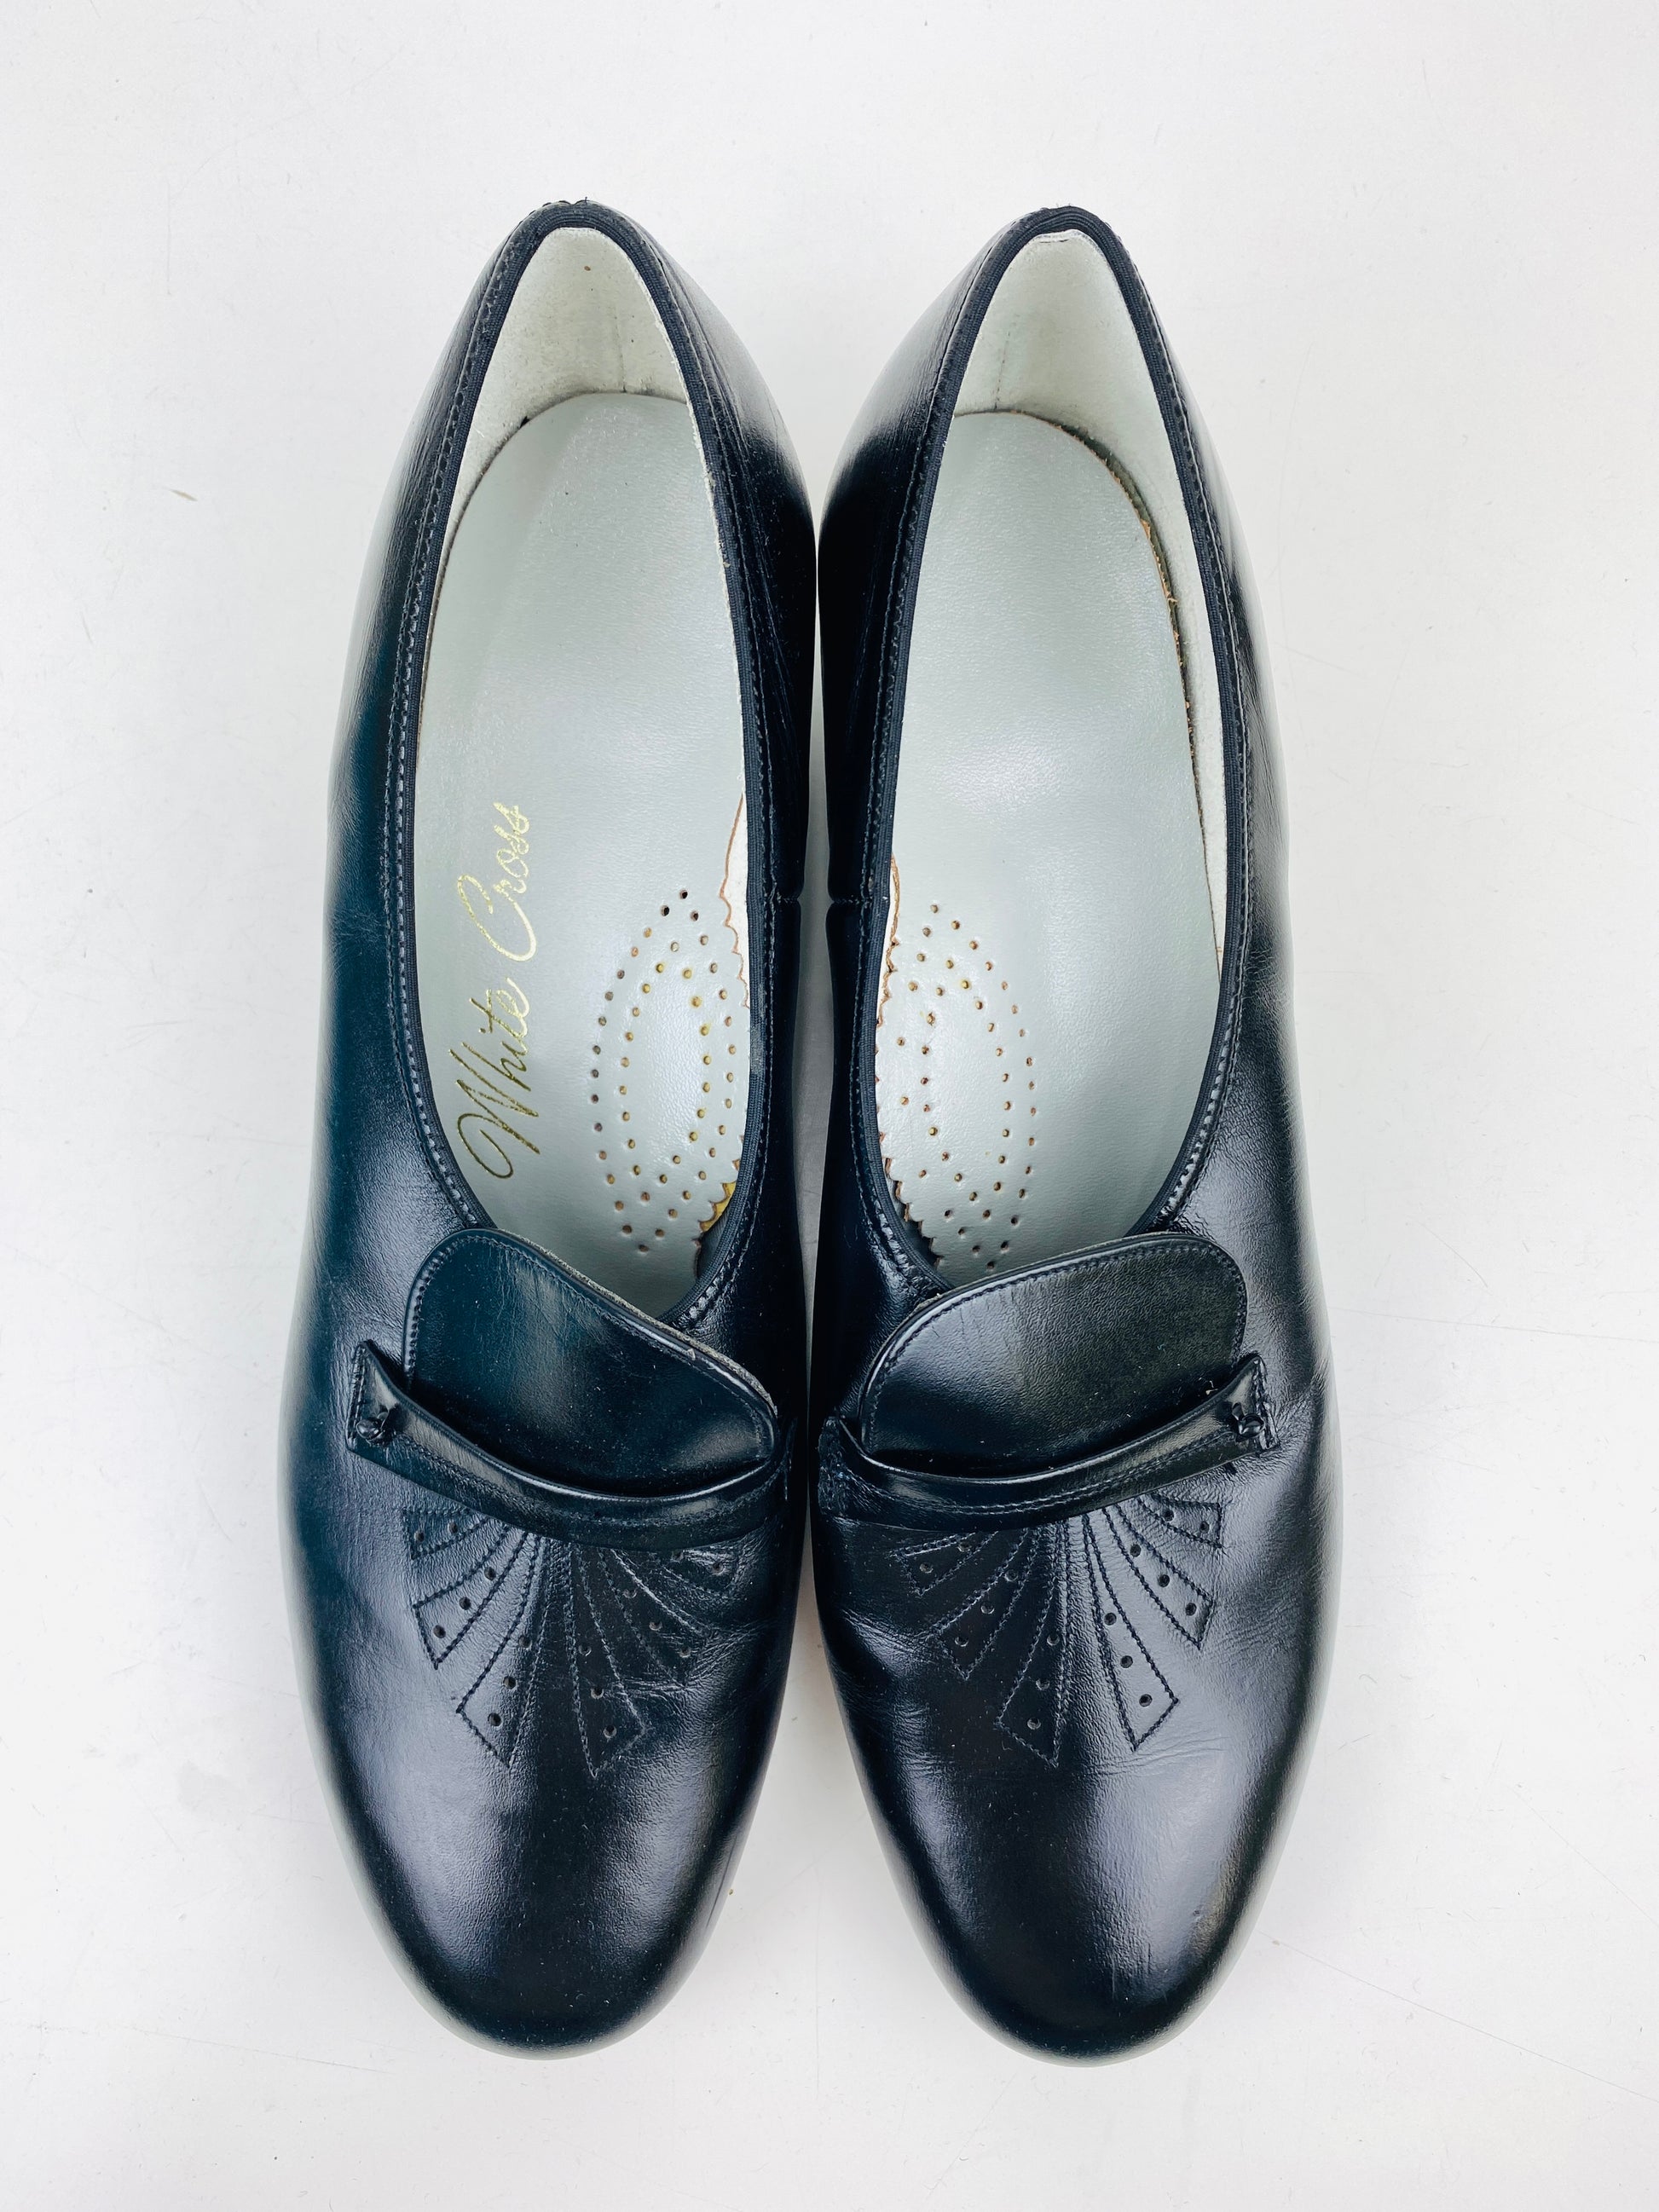 Vintage Deadstock Shoes, Women's 1980s Black Leather Cuban Heel Pumps, NOS, 7883